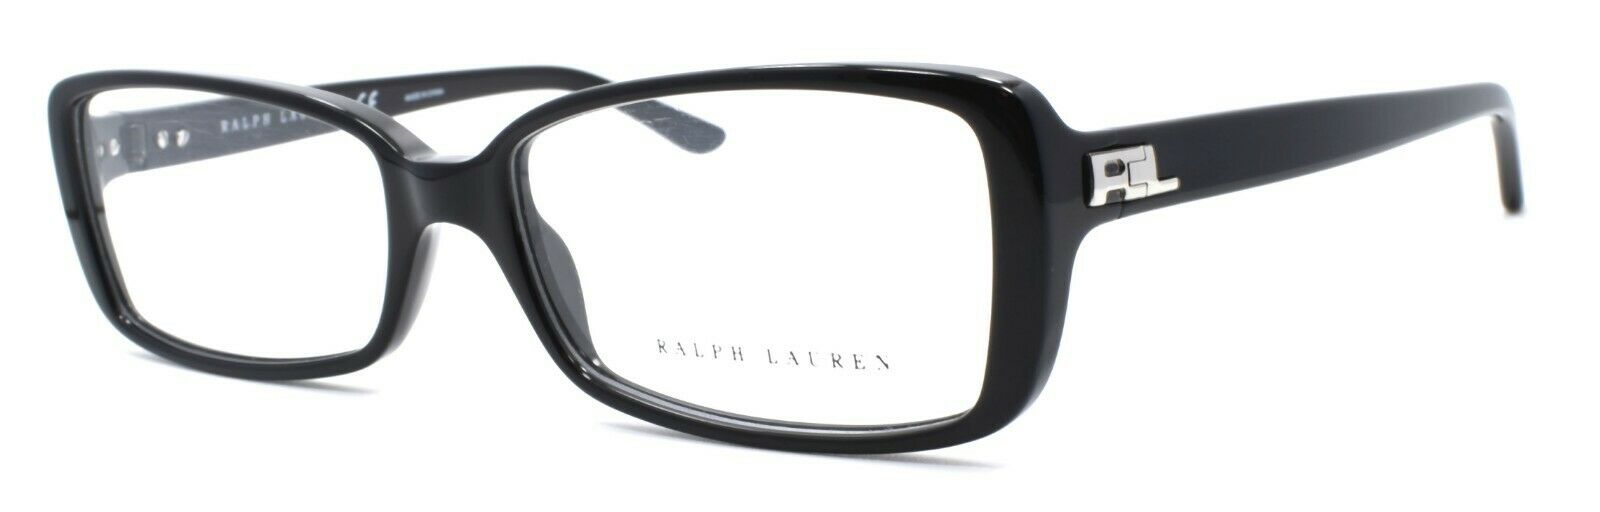 1-Ralph Lauren RL6114 5001 Women's Eyeglasses Frames 53-16-135 Black-8053672205657-IKSpecs